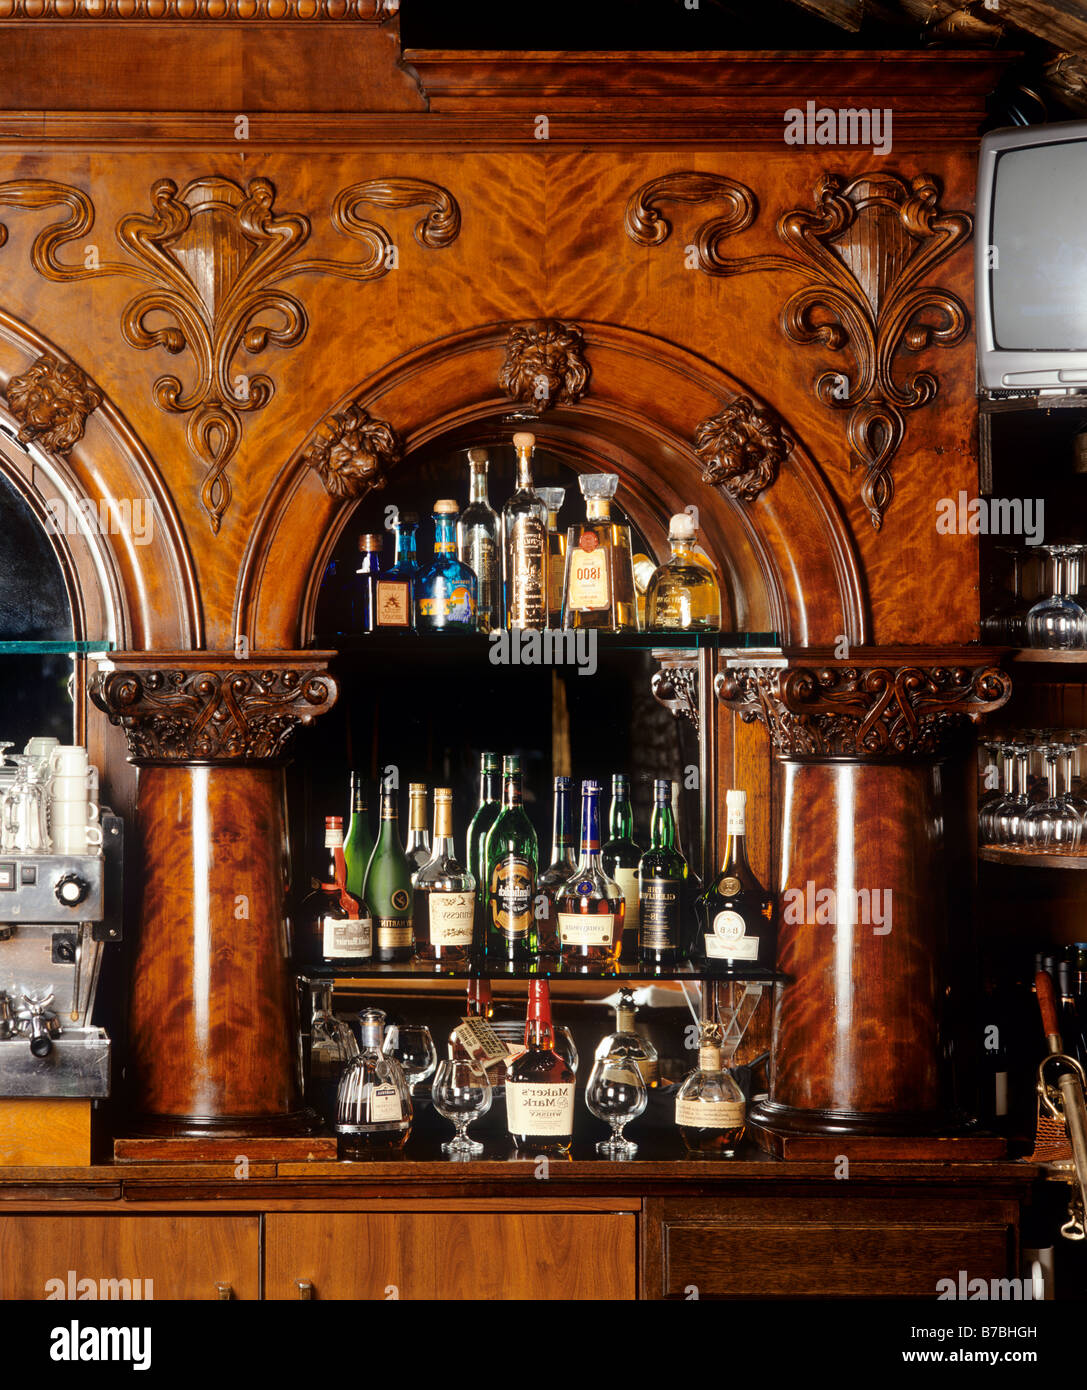 Un bar de servicio completo, con fachada de madera tallada suministra una gama completa de libaciones Foto de stock